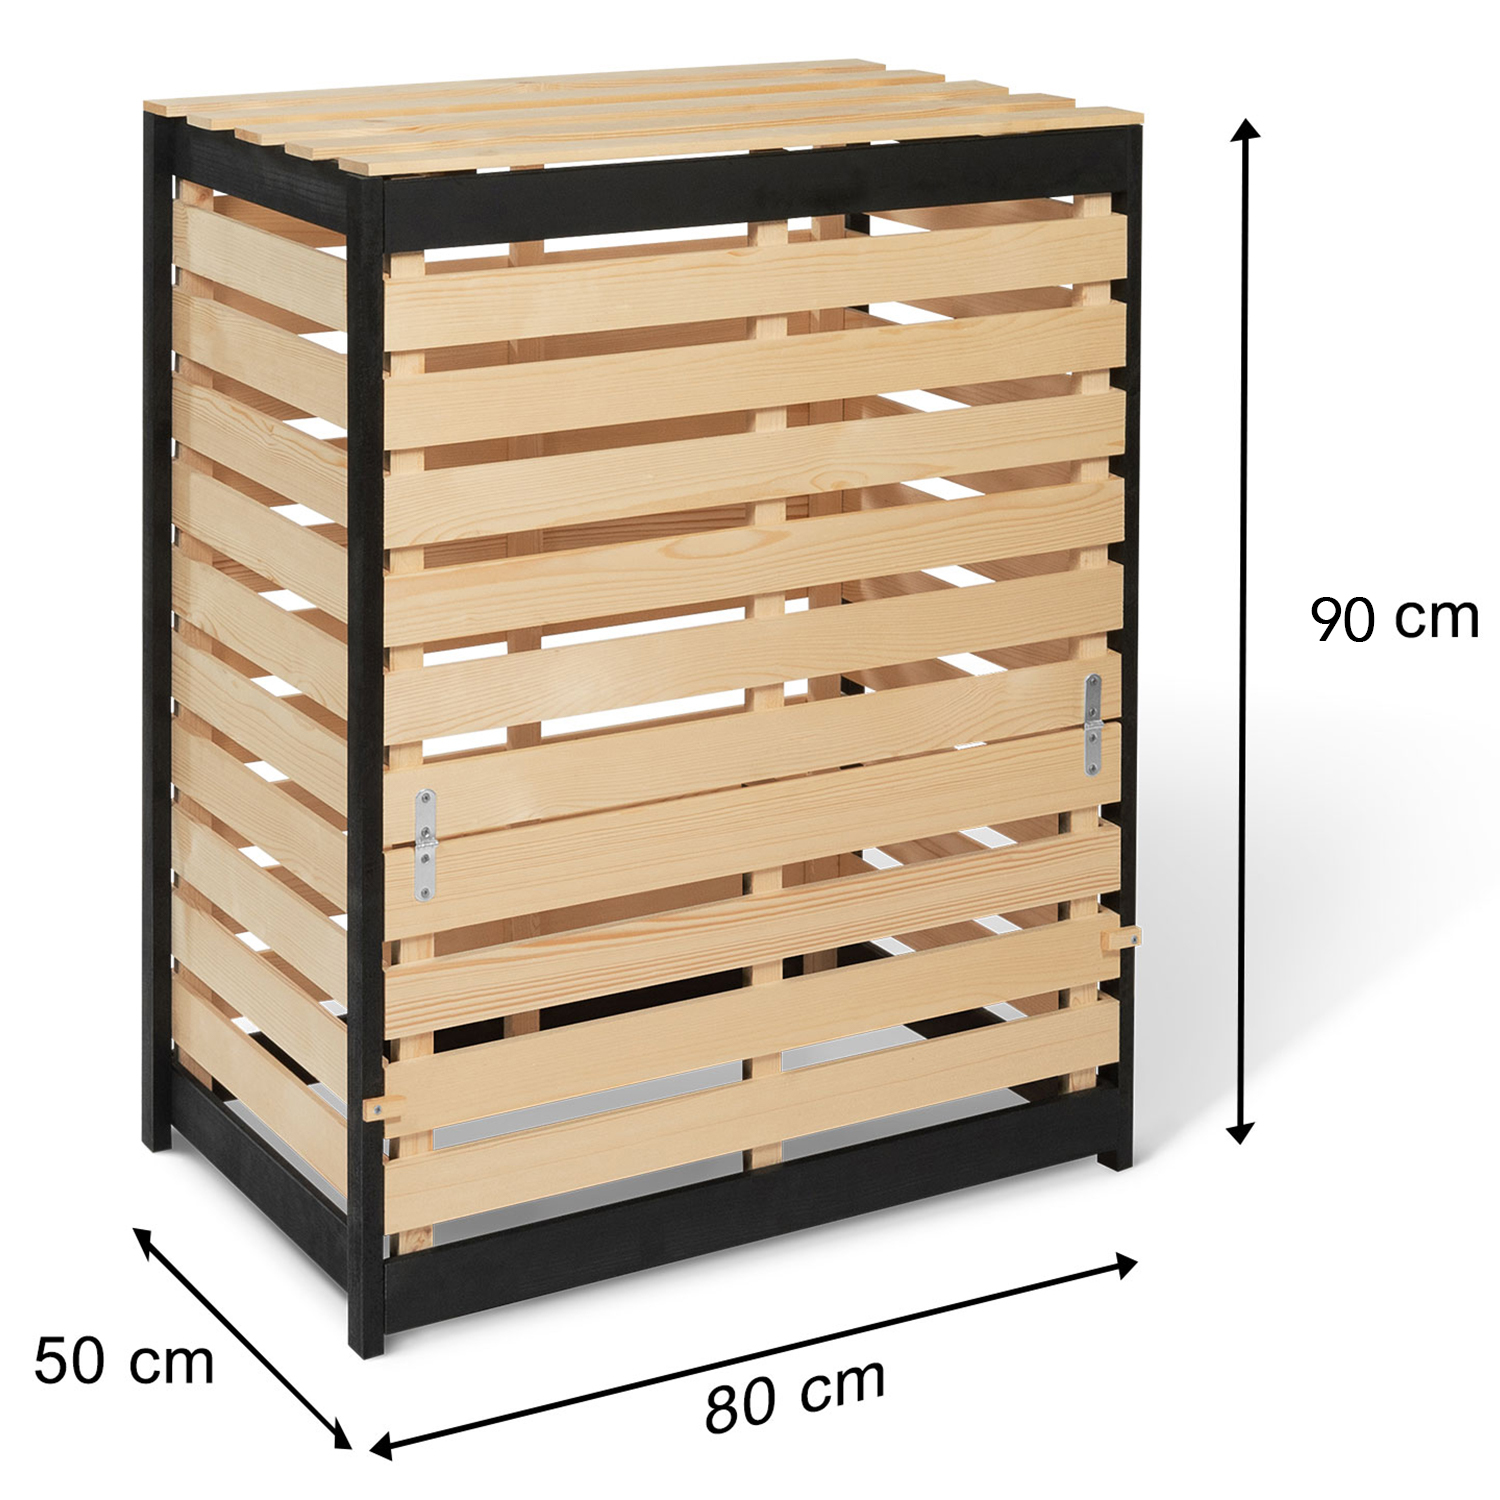 Composteur en bois fabrication française Dimensions 80 x 80 x 90 cm Bois  Iroko massif